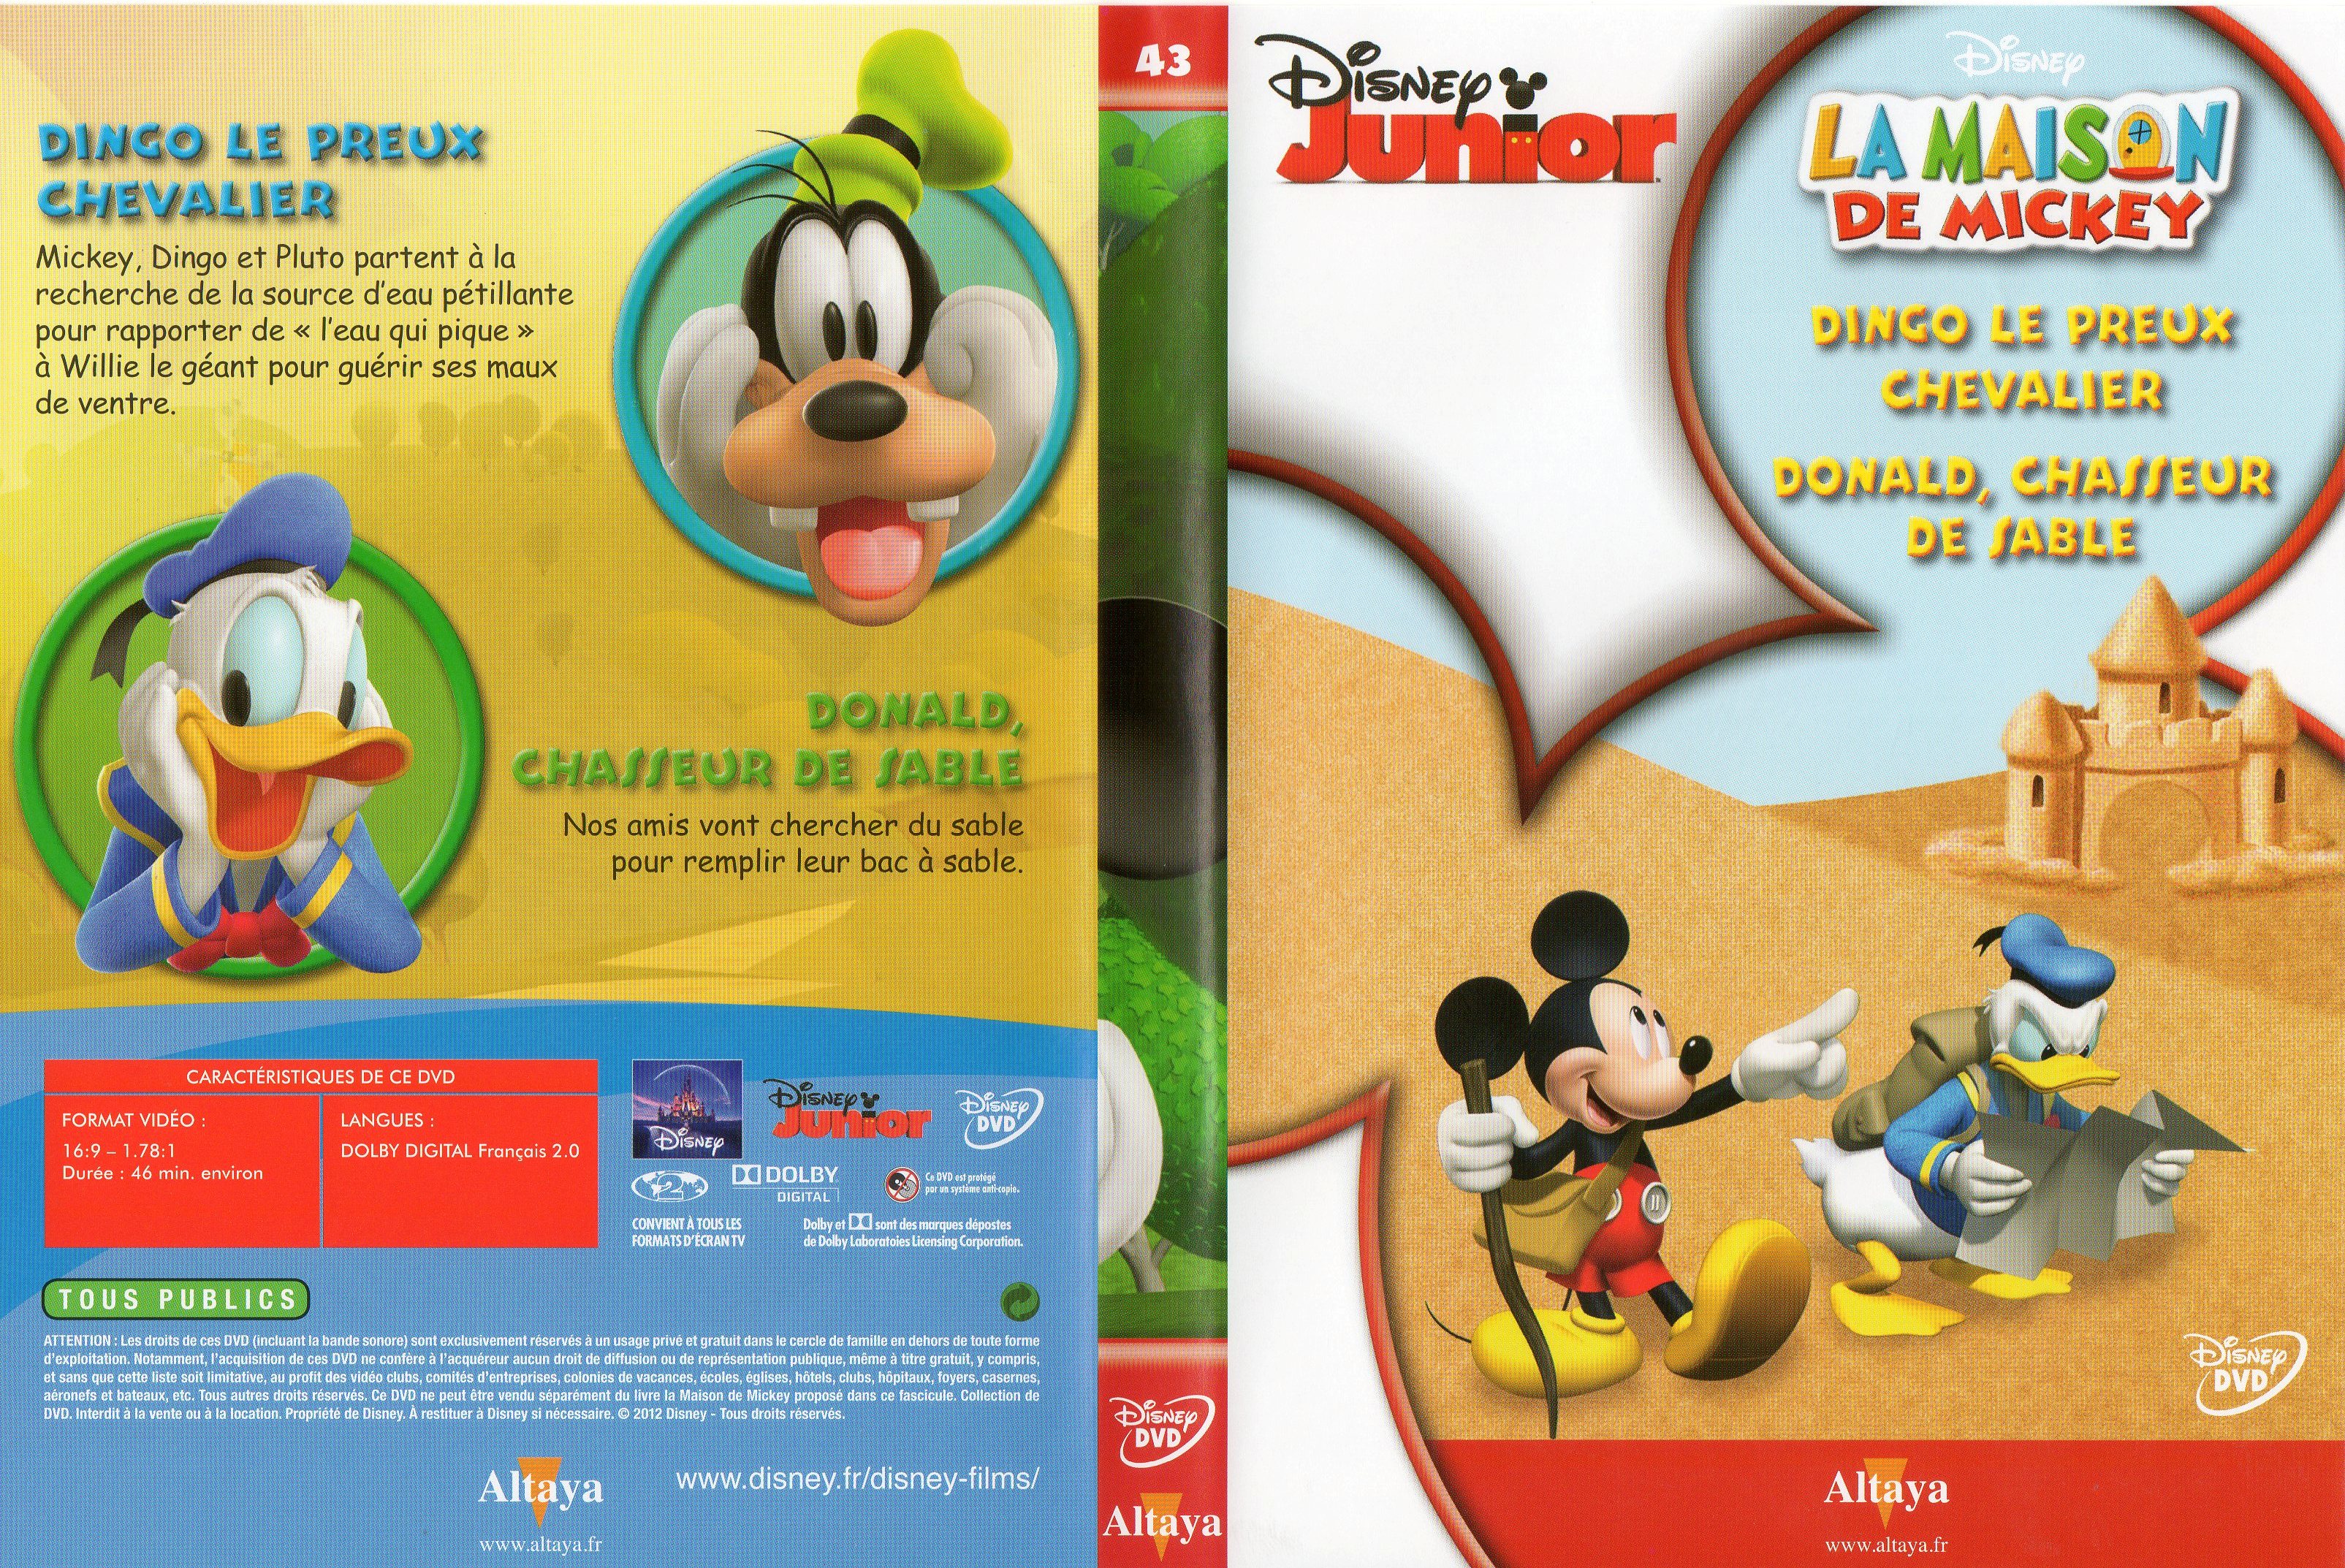 Jaquette DVD La maison de Mickey DVD 43